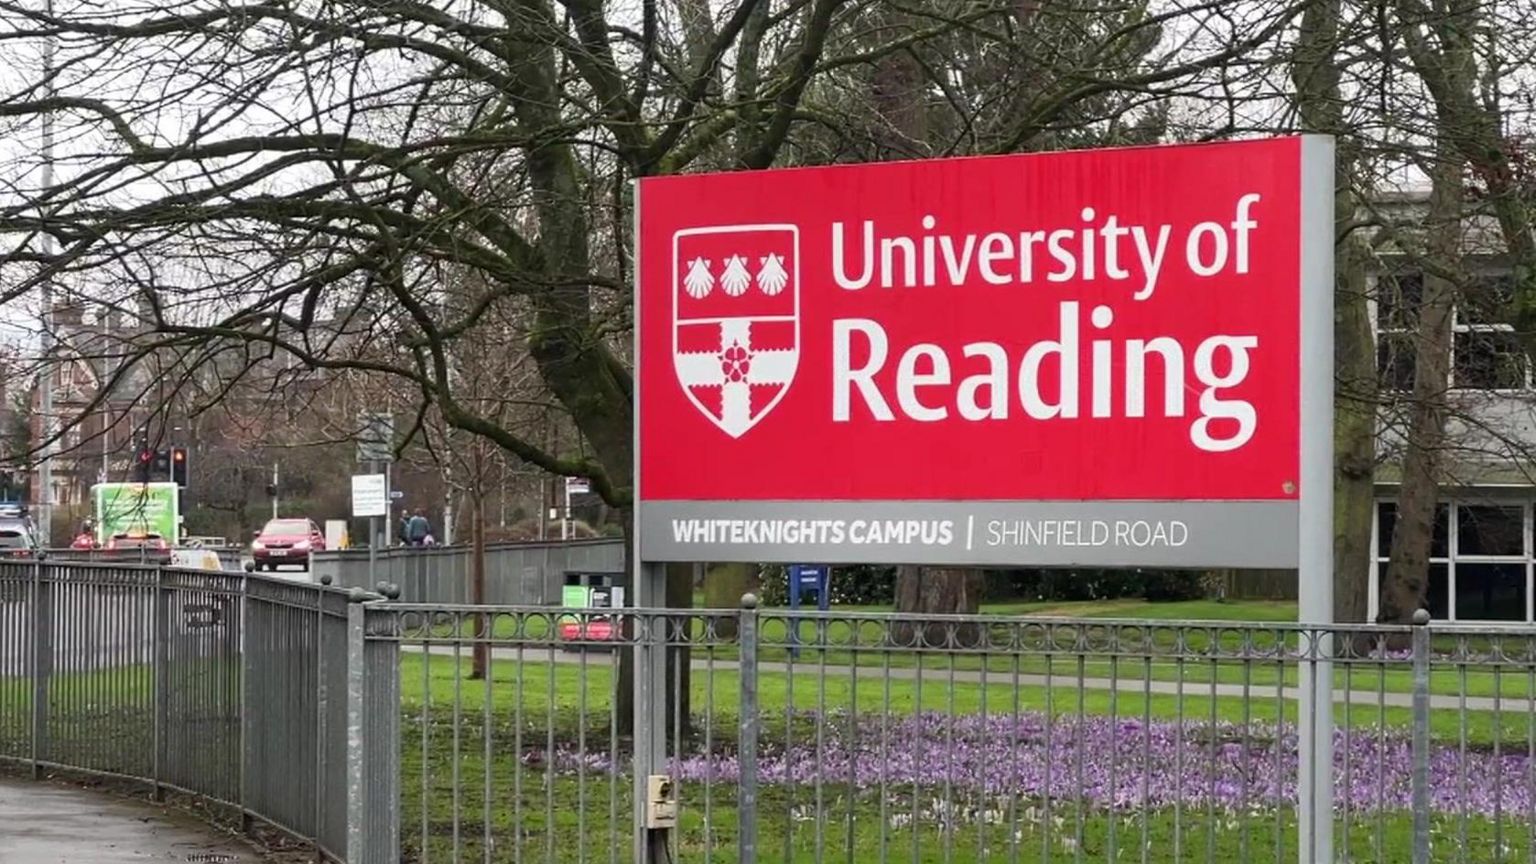 Reading University signage